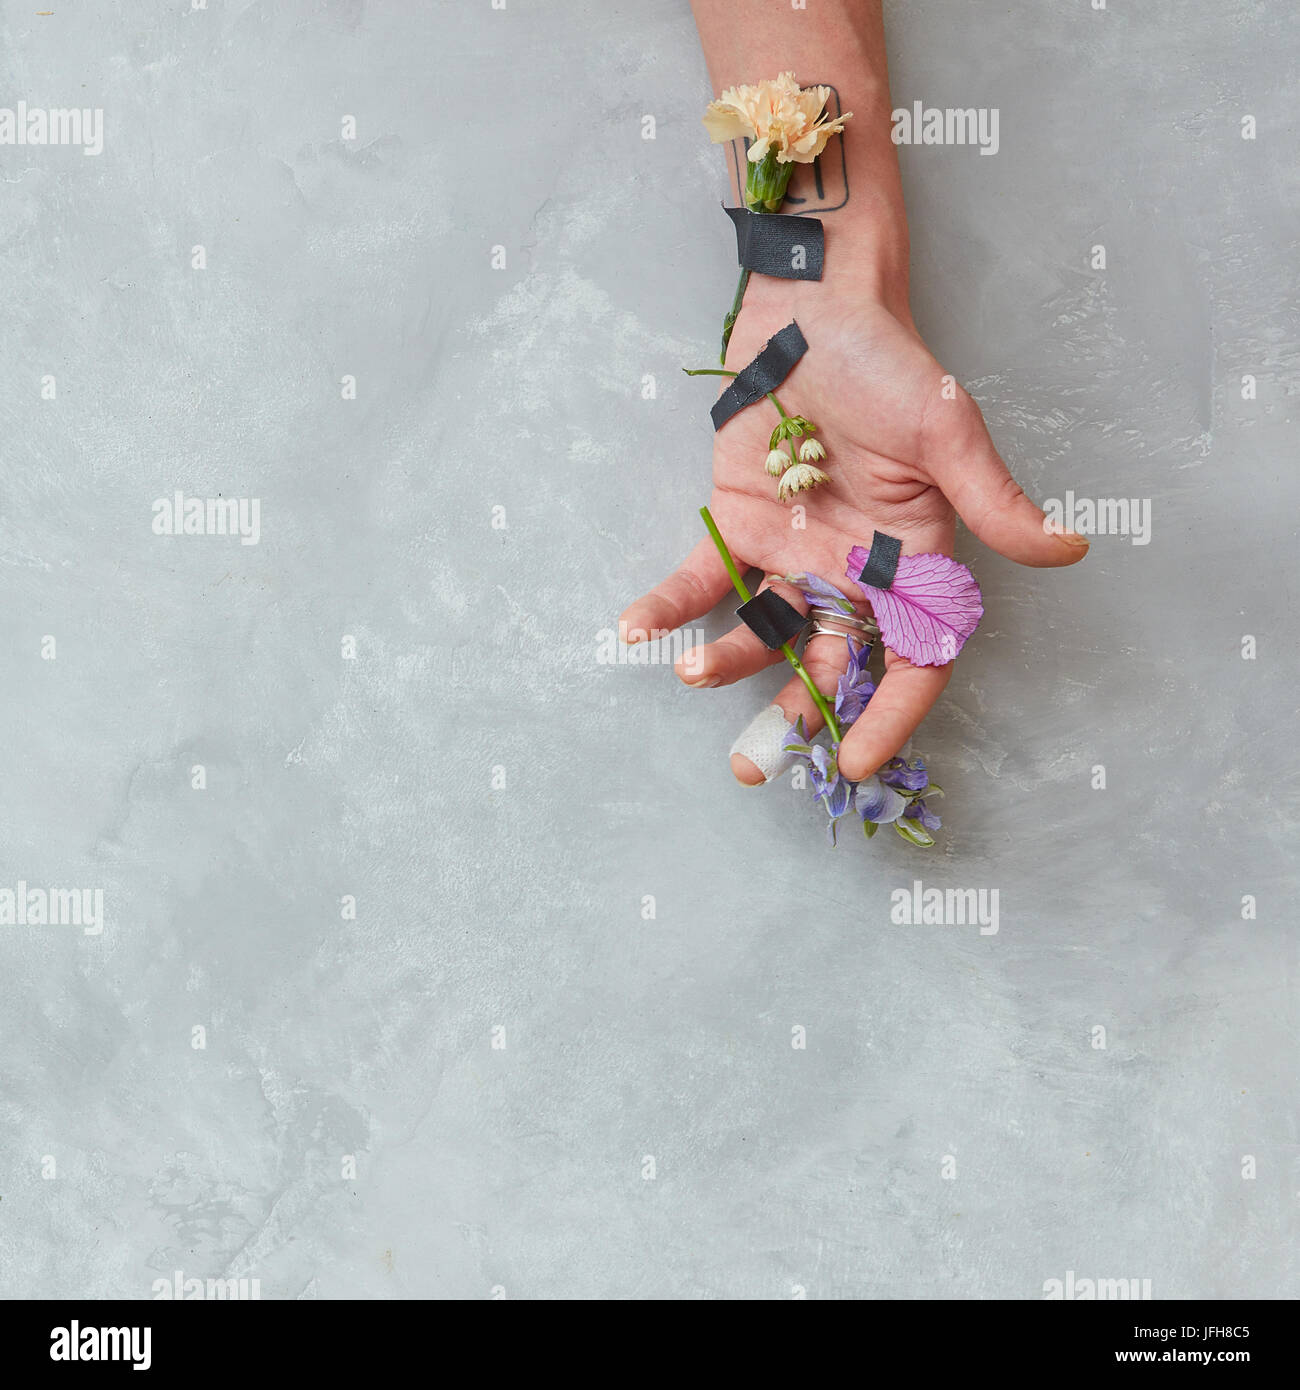 La mano del ser humano con flores. Foto de stock